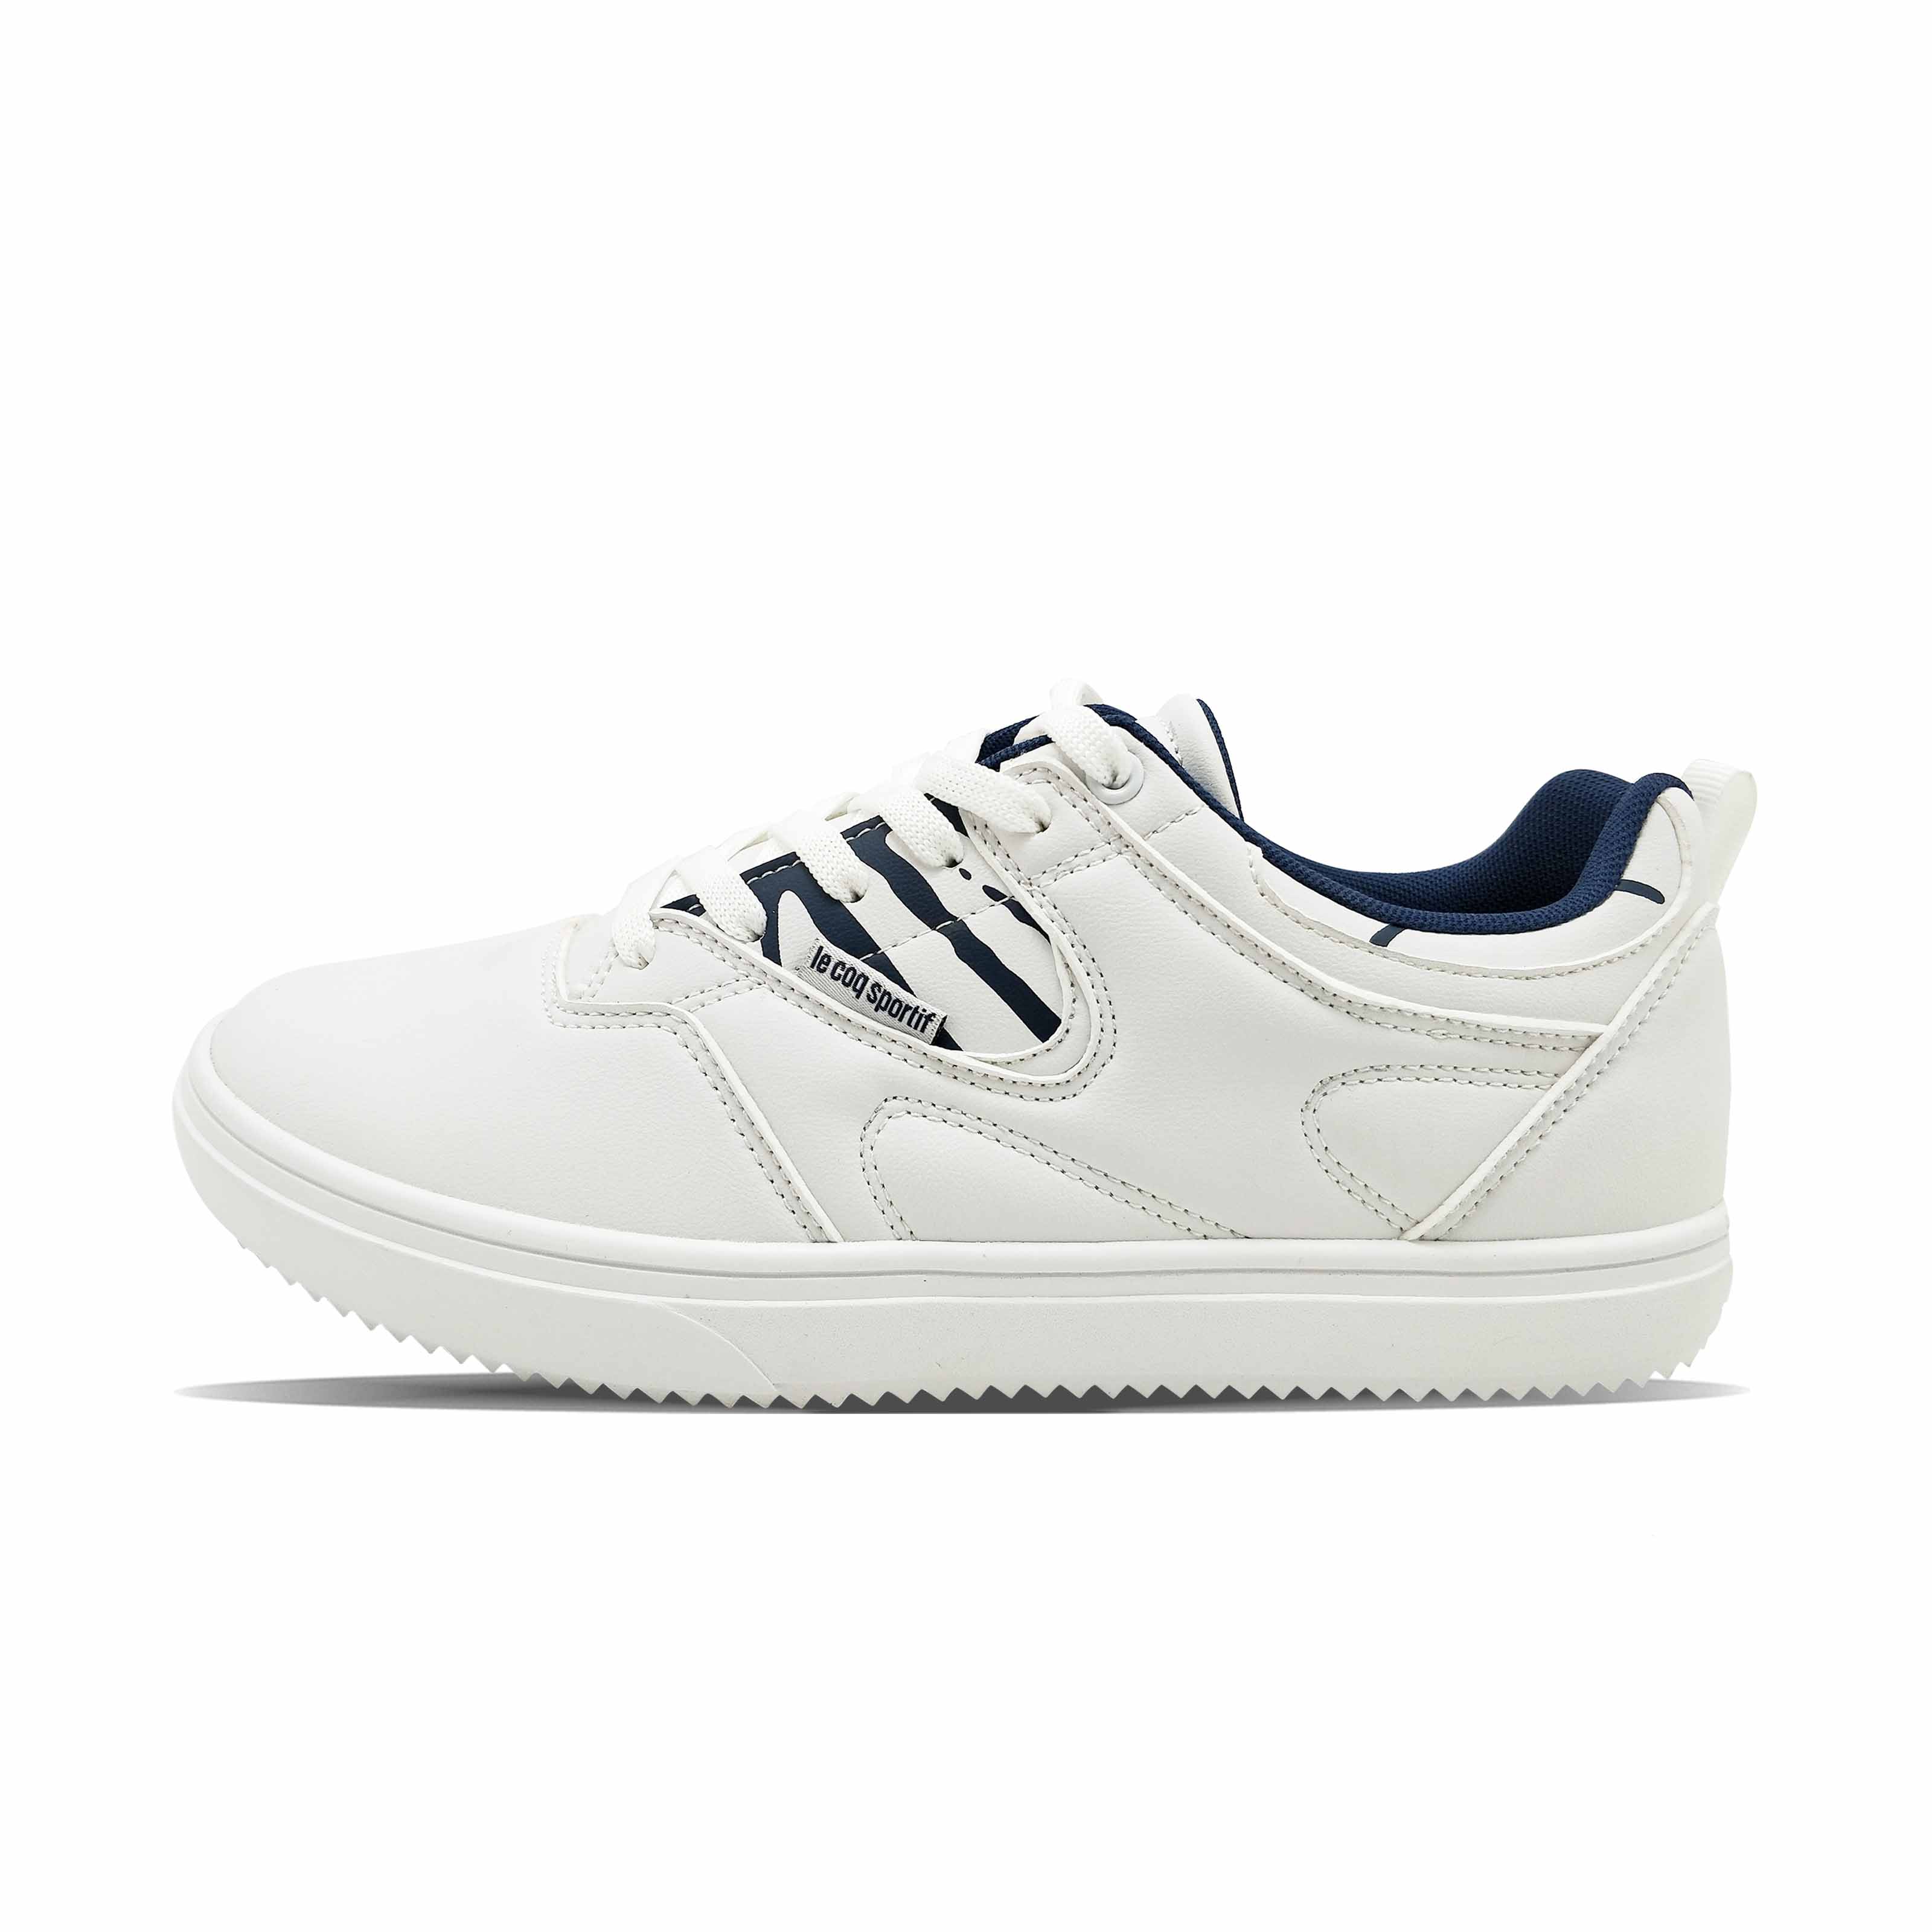 Branco azul lace-up zebra padrão de negócios casuais sapatos masculinos